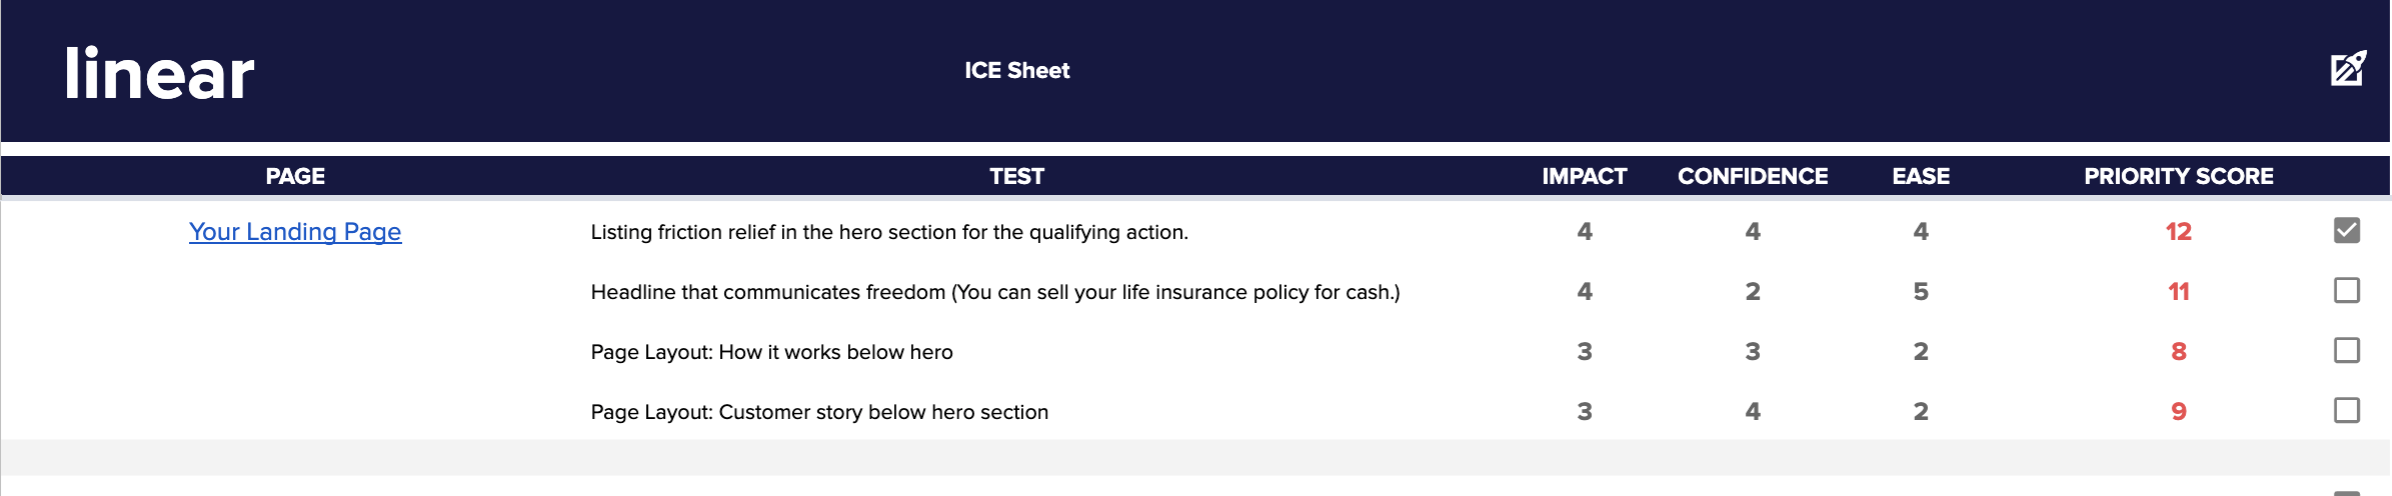 ICE sheet scoring example